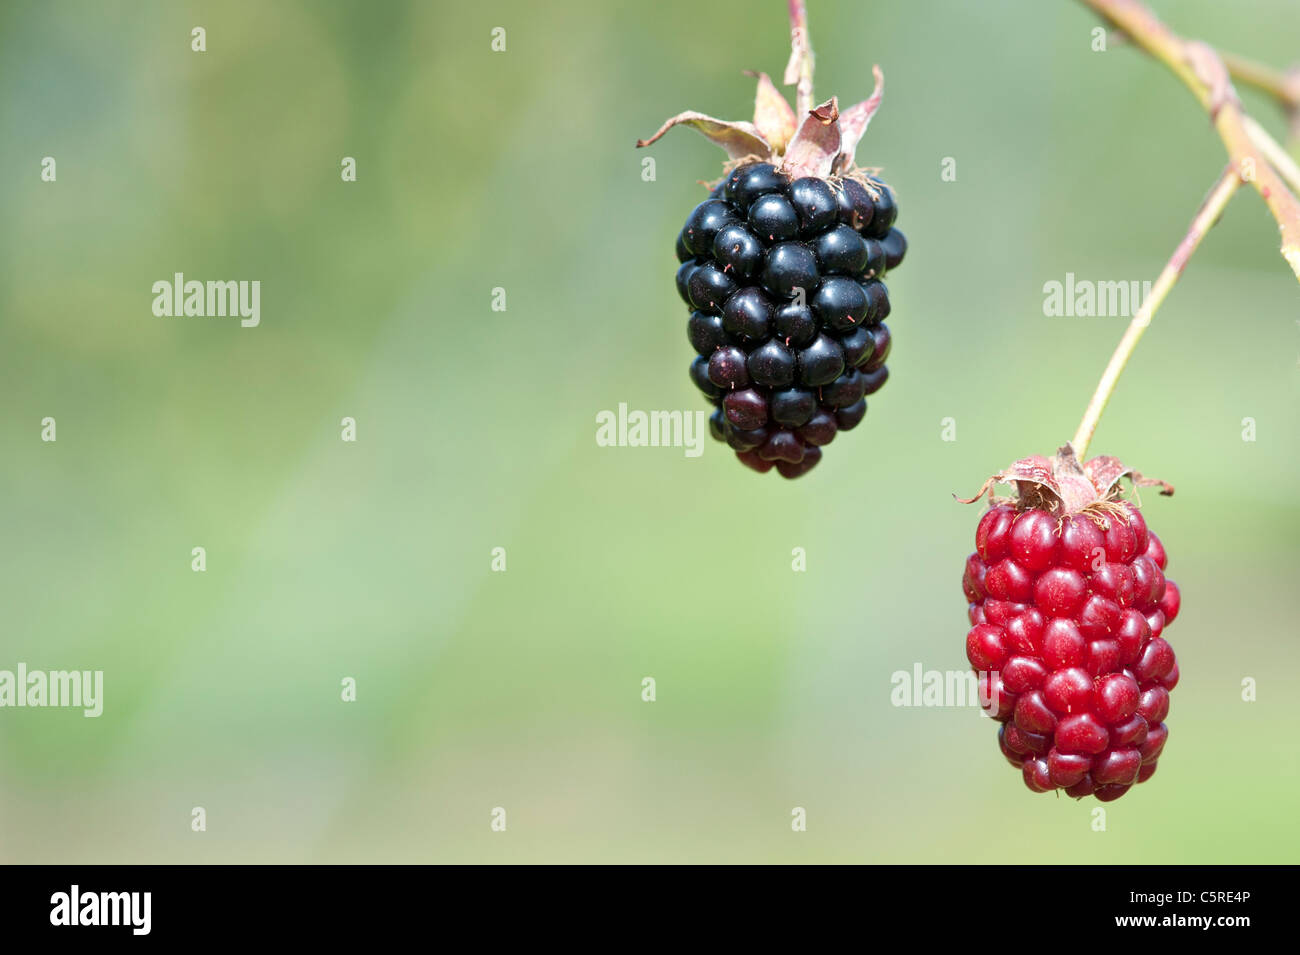 Blackberry Ouachita fruits on the bush Stock Photo